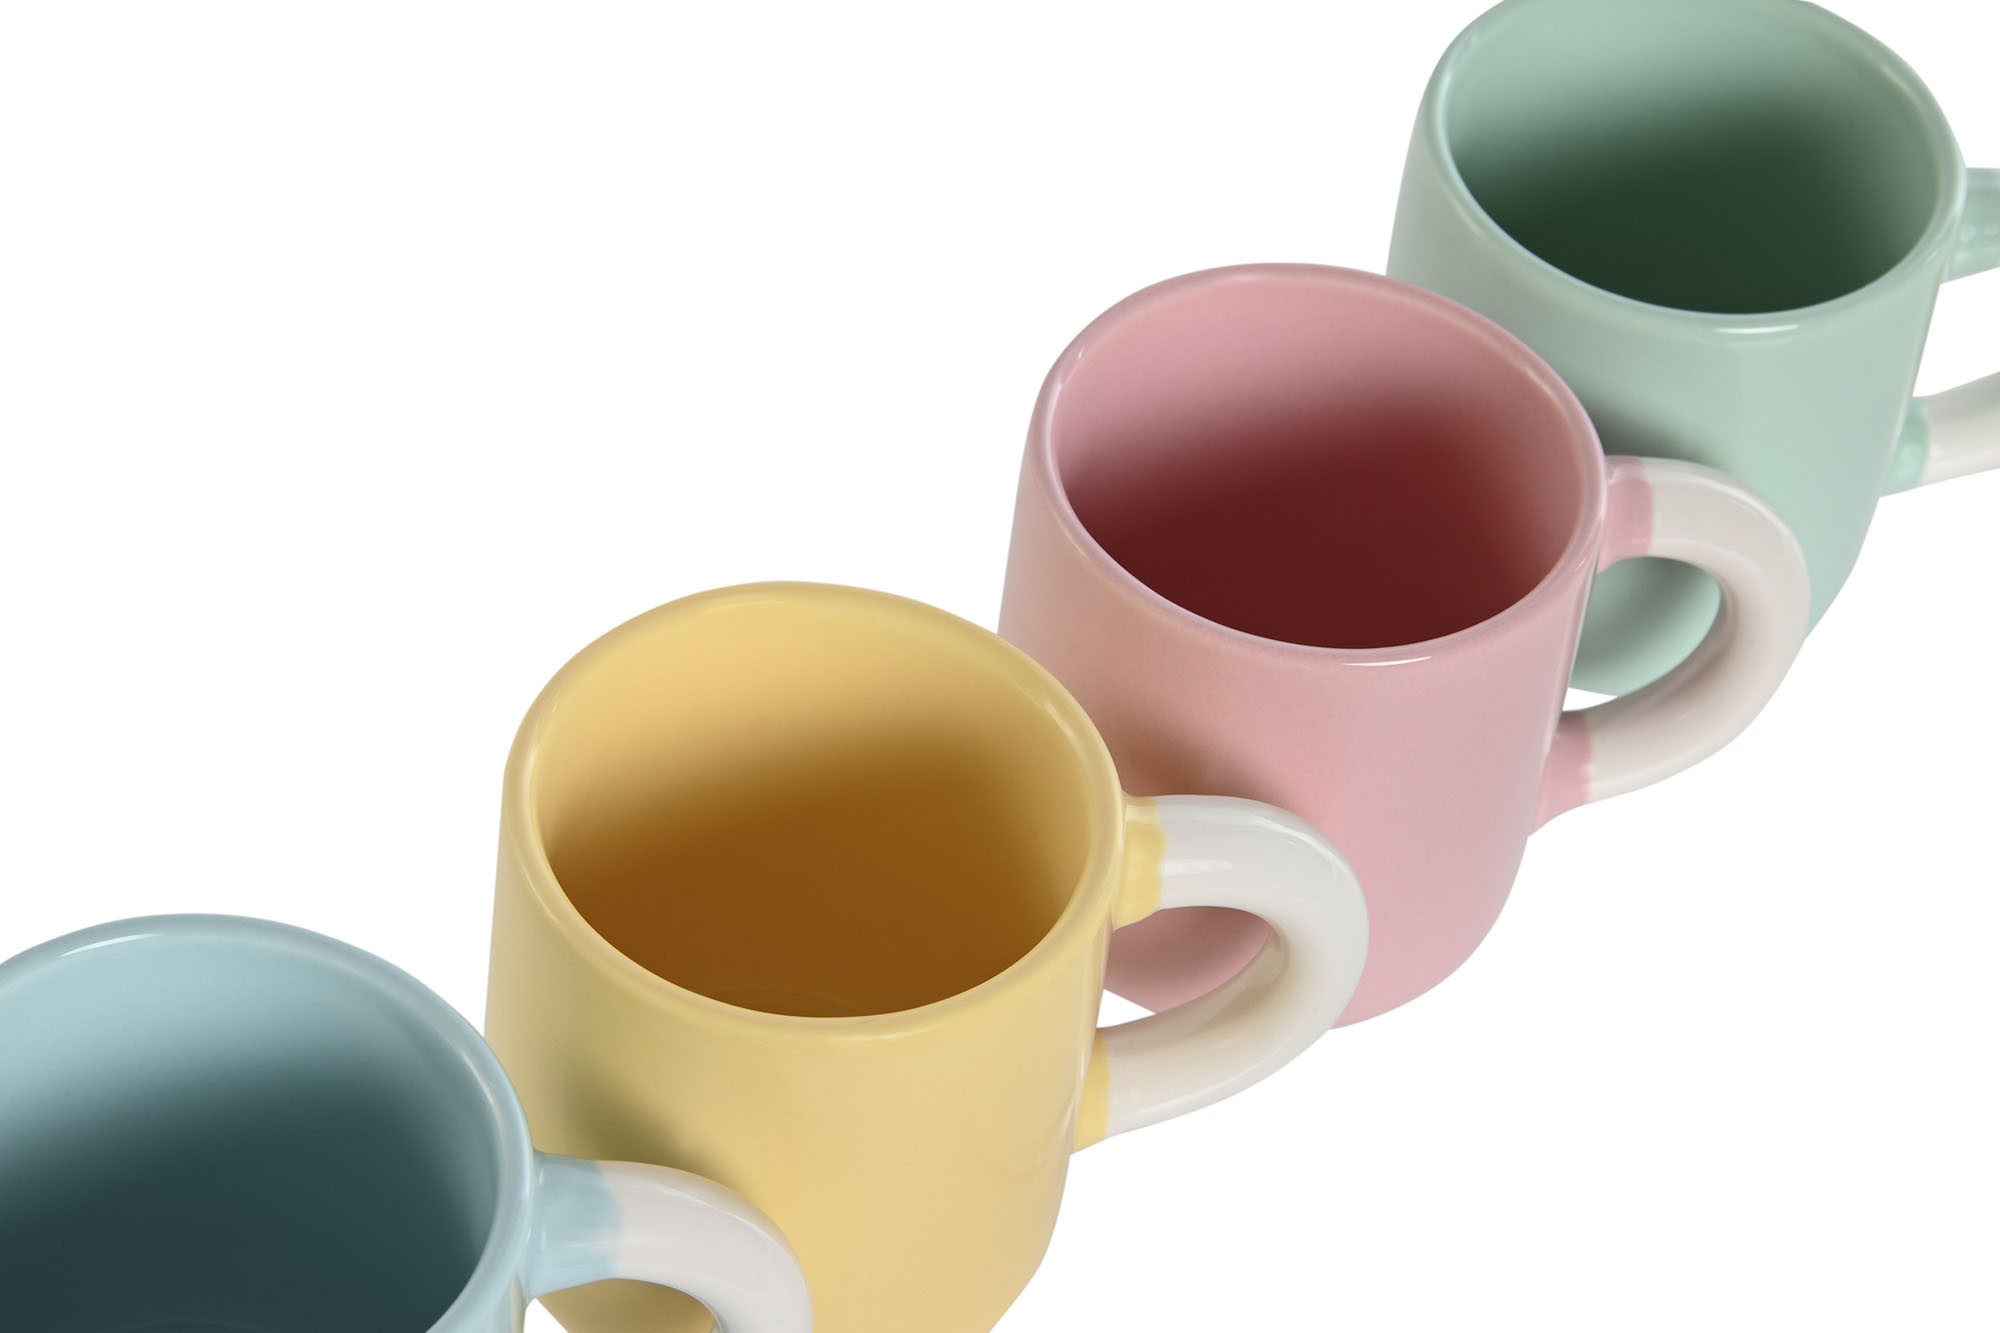 Tazas de café de porcelana: elegantes y duraderas, con colores pastel que añaden encanto a cualquier momento del día. ¡Disfruta de la dulzura cada mañana!